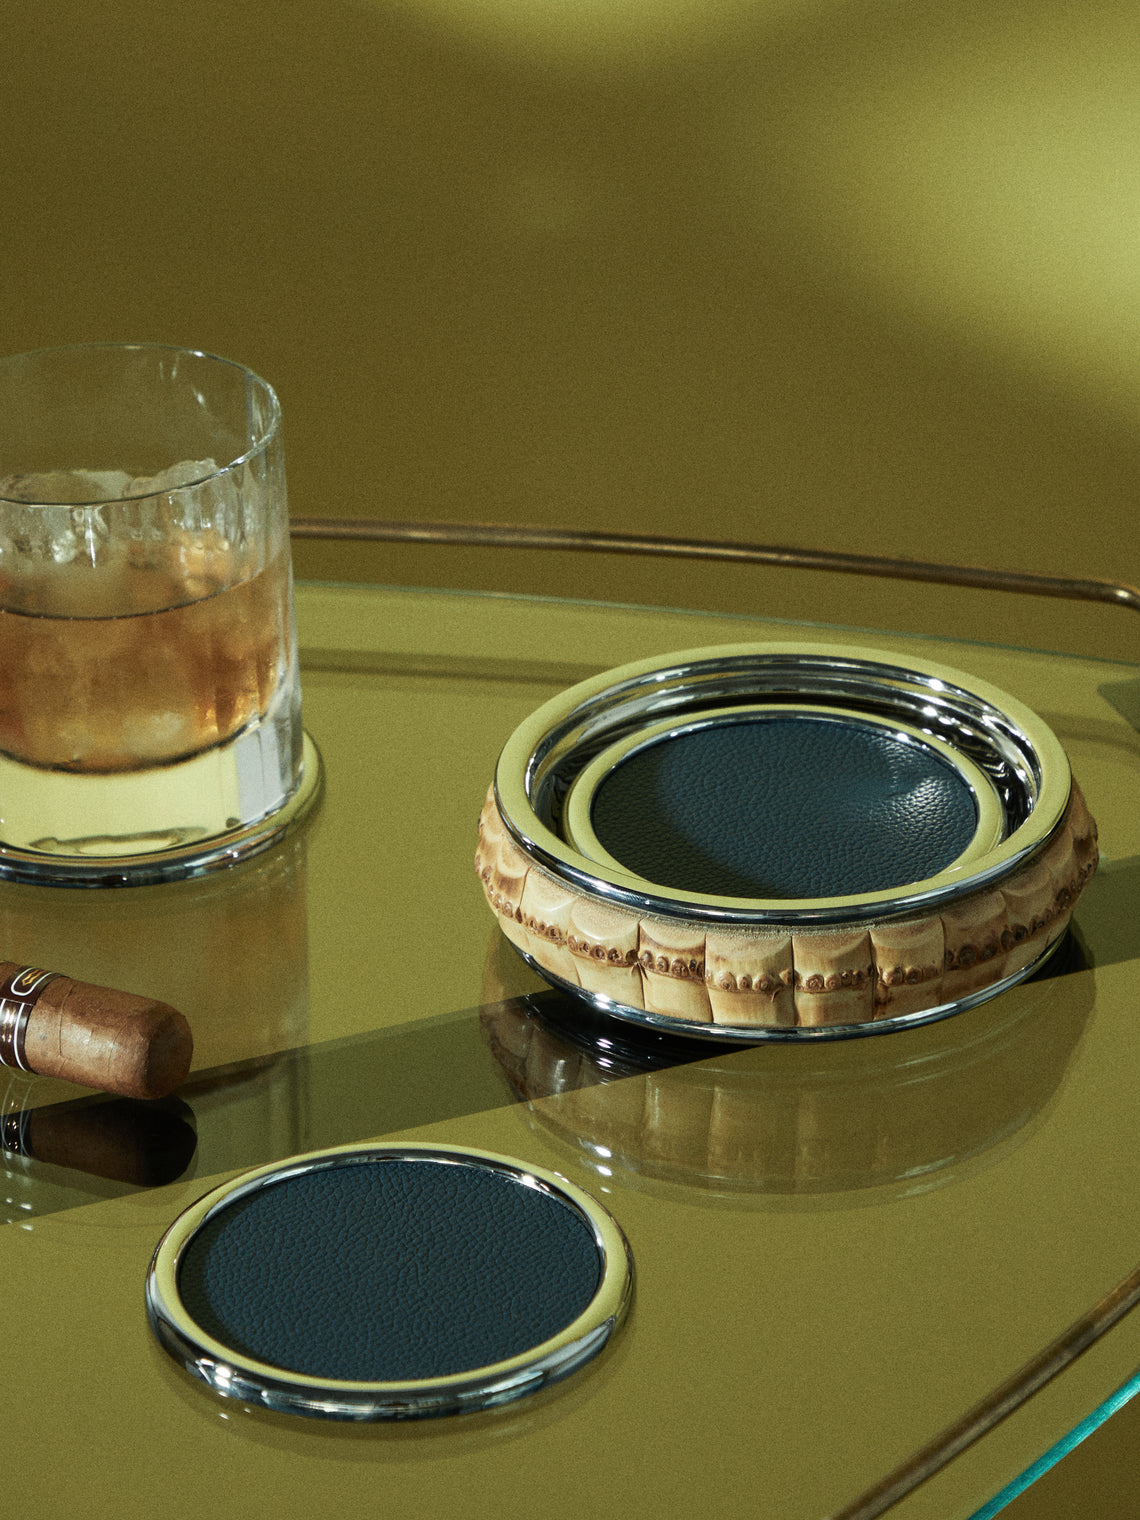 Lorenzi Milano - Leather Coasters with Bamboo Holder (Set of 6) - Blue - ABASK